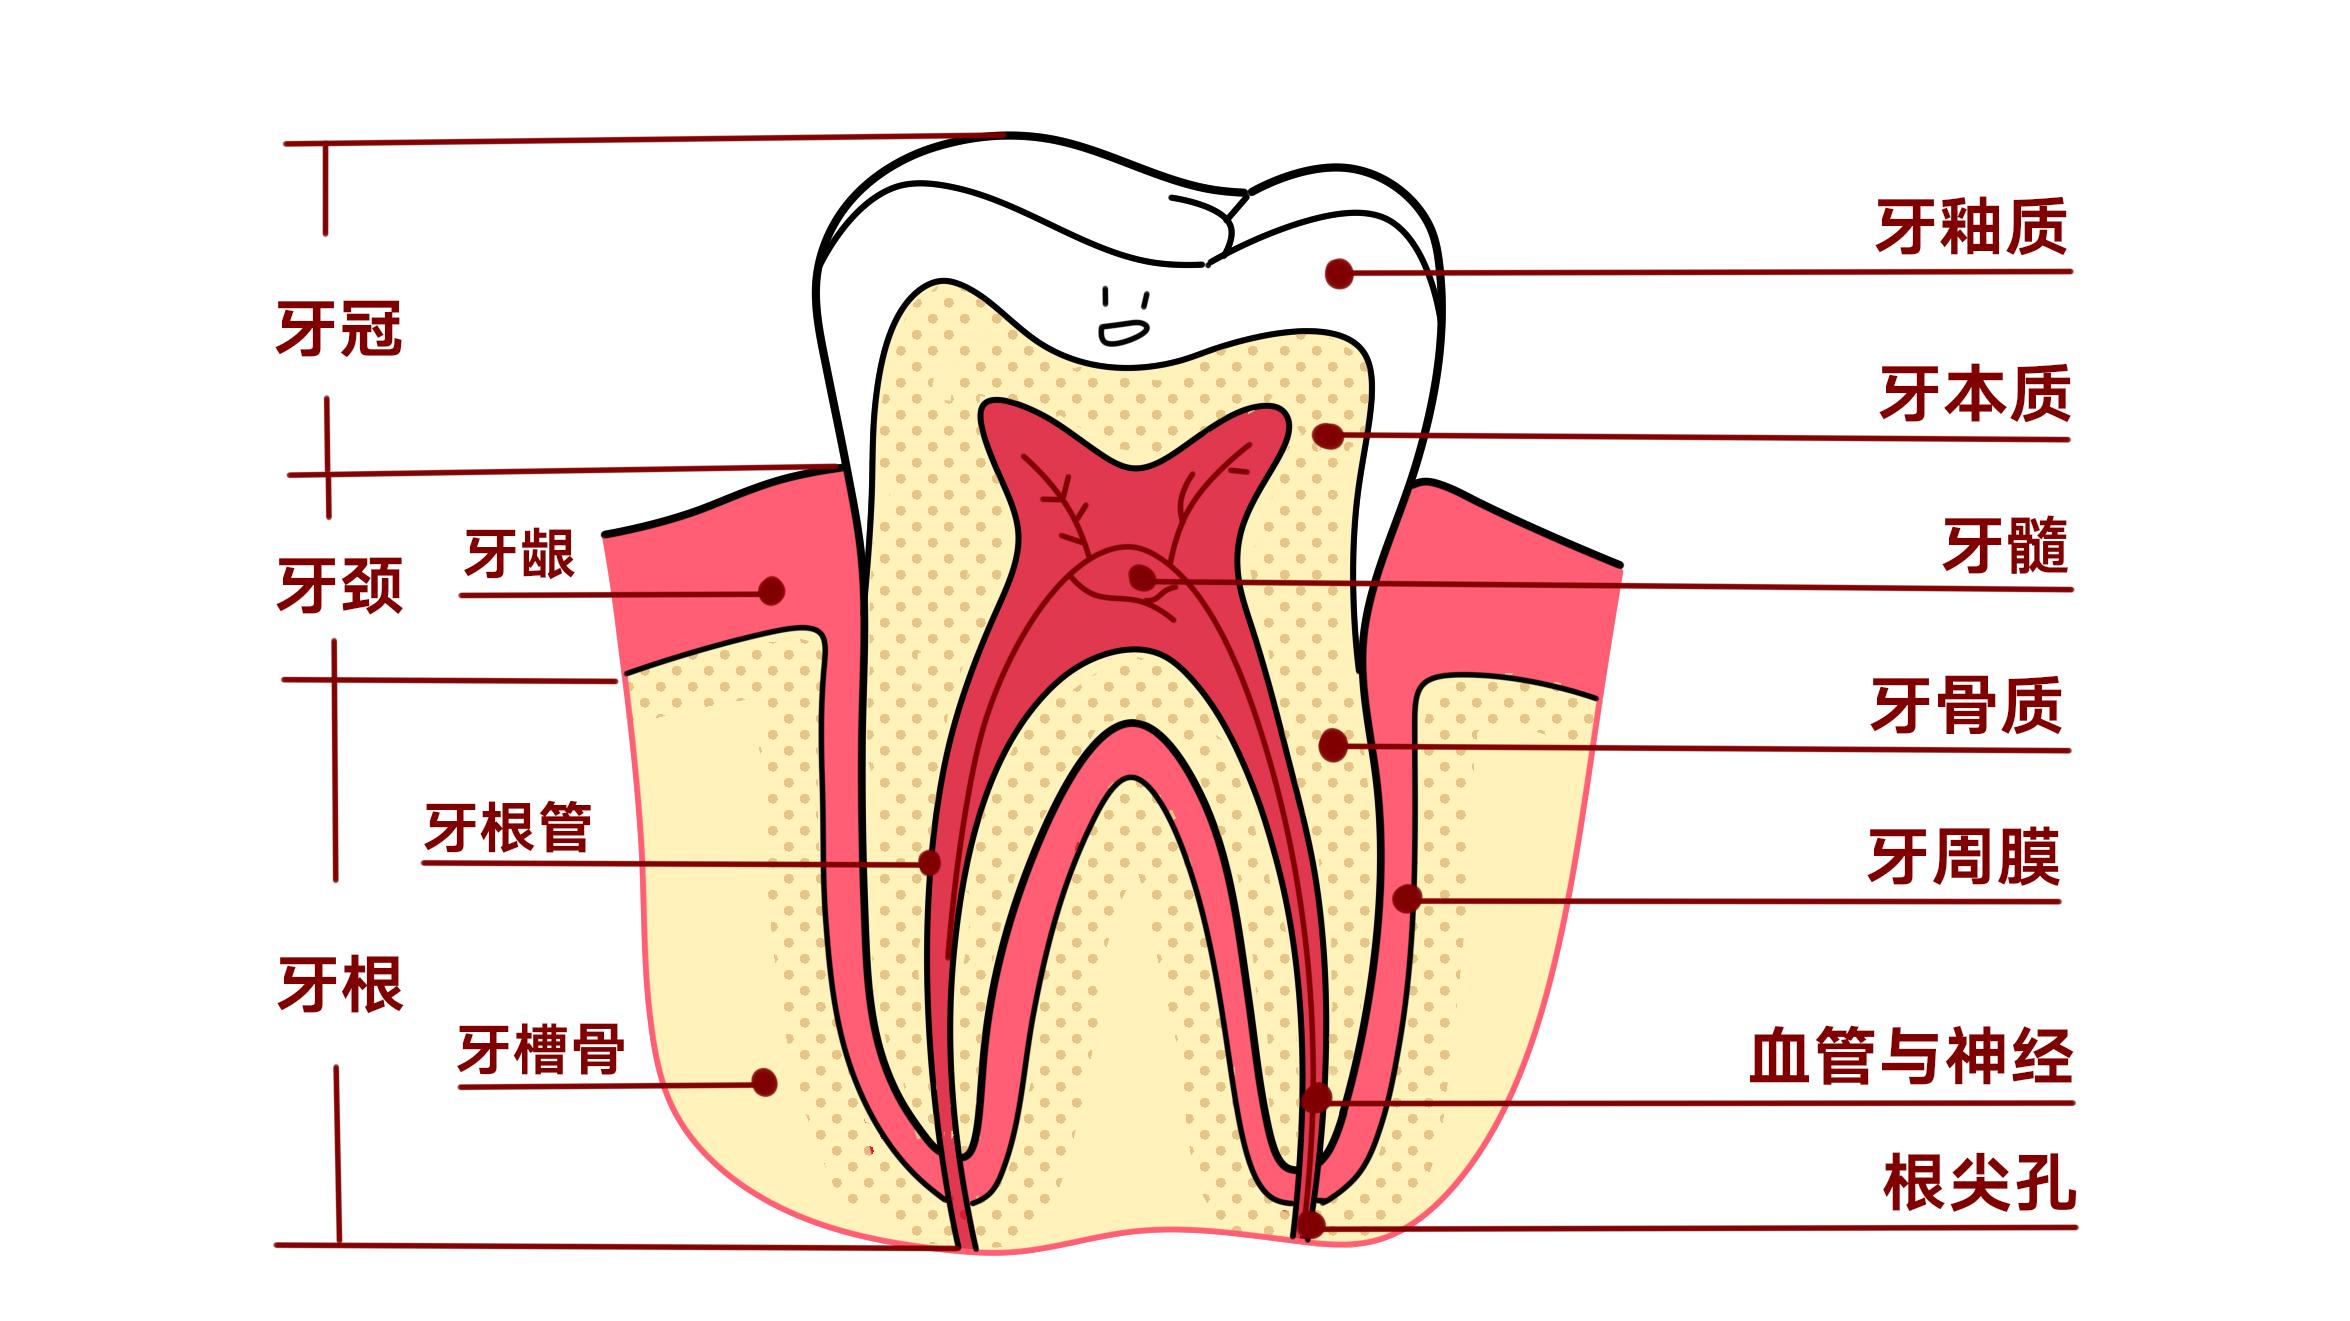 牙齿,却有着复杂的结构,从上至下是牙冠,牙颈,牙根;由外至里是牙釉质